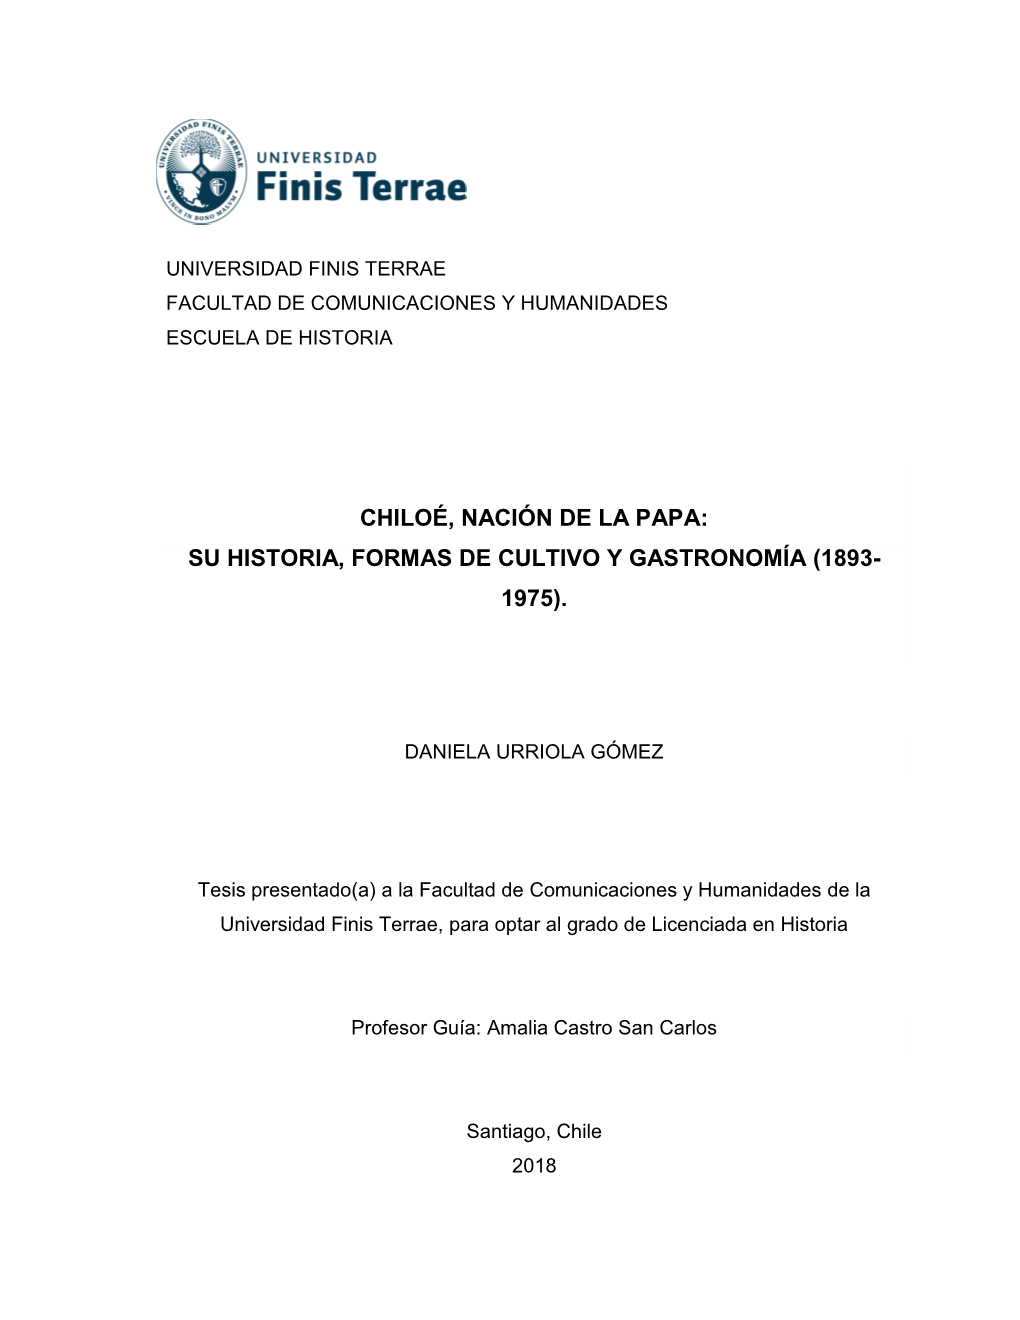 Chiloé, Nación De La Papa: Su Historia, Formas De Cultivo Y Gastronomía (1893- 1975)